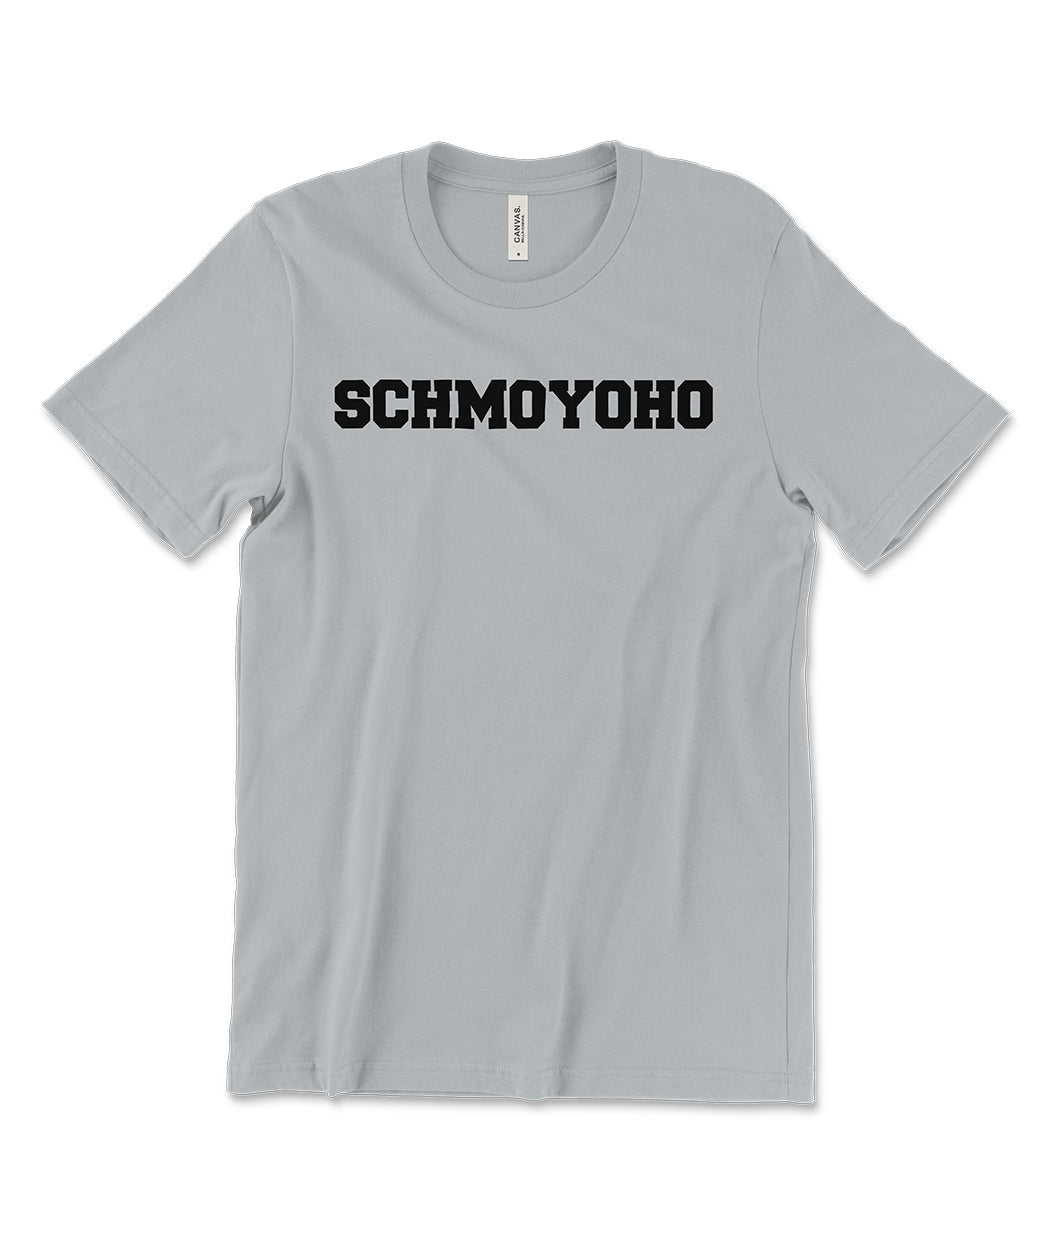 Schmoyoho Shirt